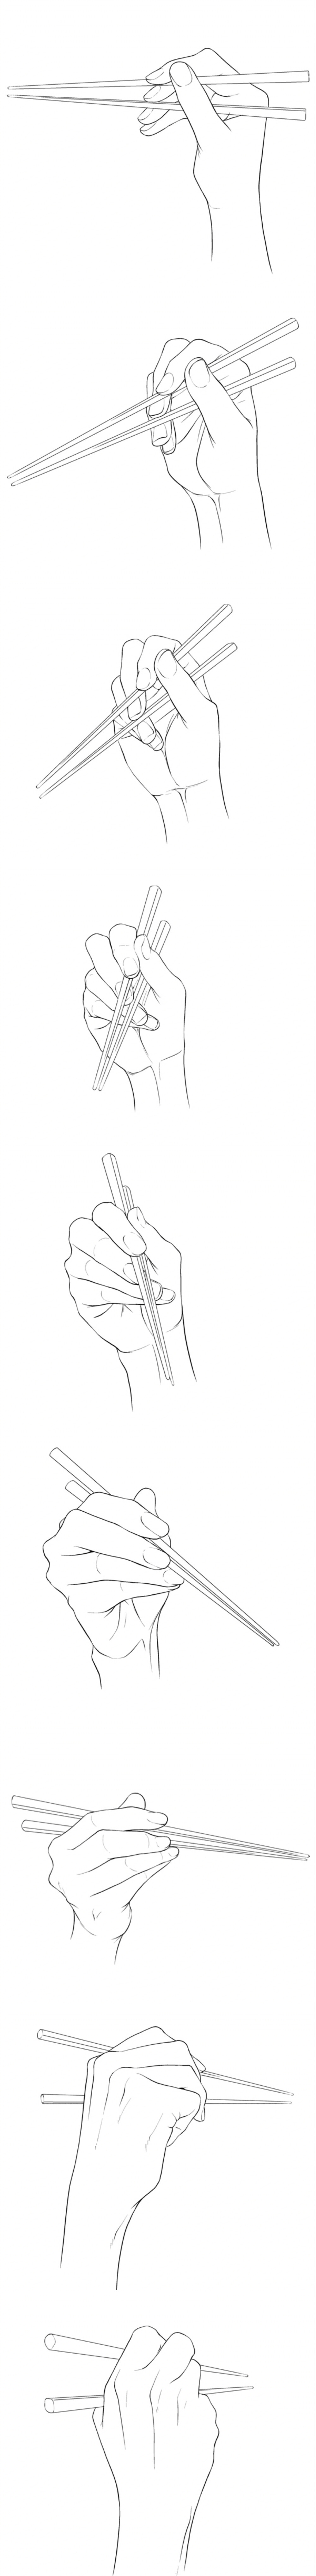 拿筷子的手怎么画图片